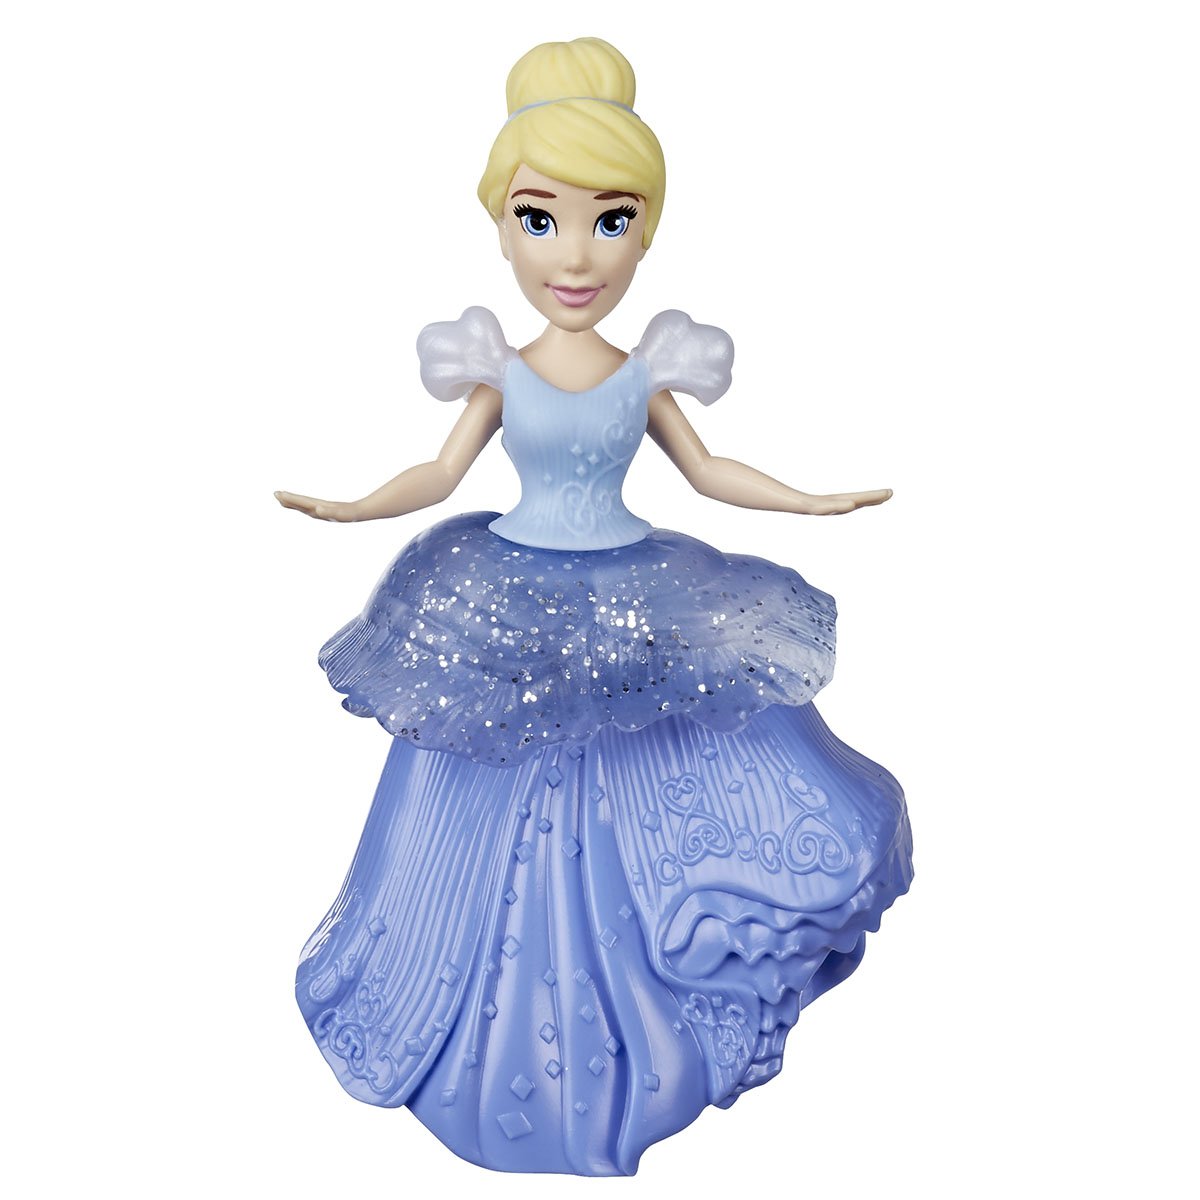 Poupee Disney princesse mini 9cm - assortie